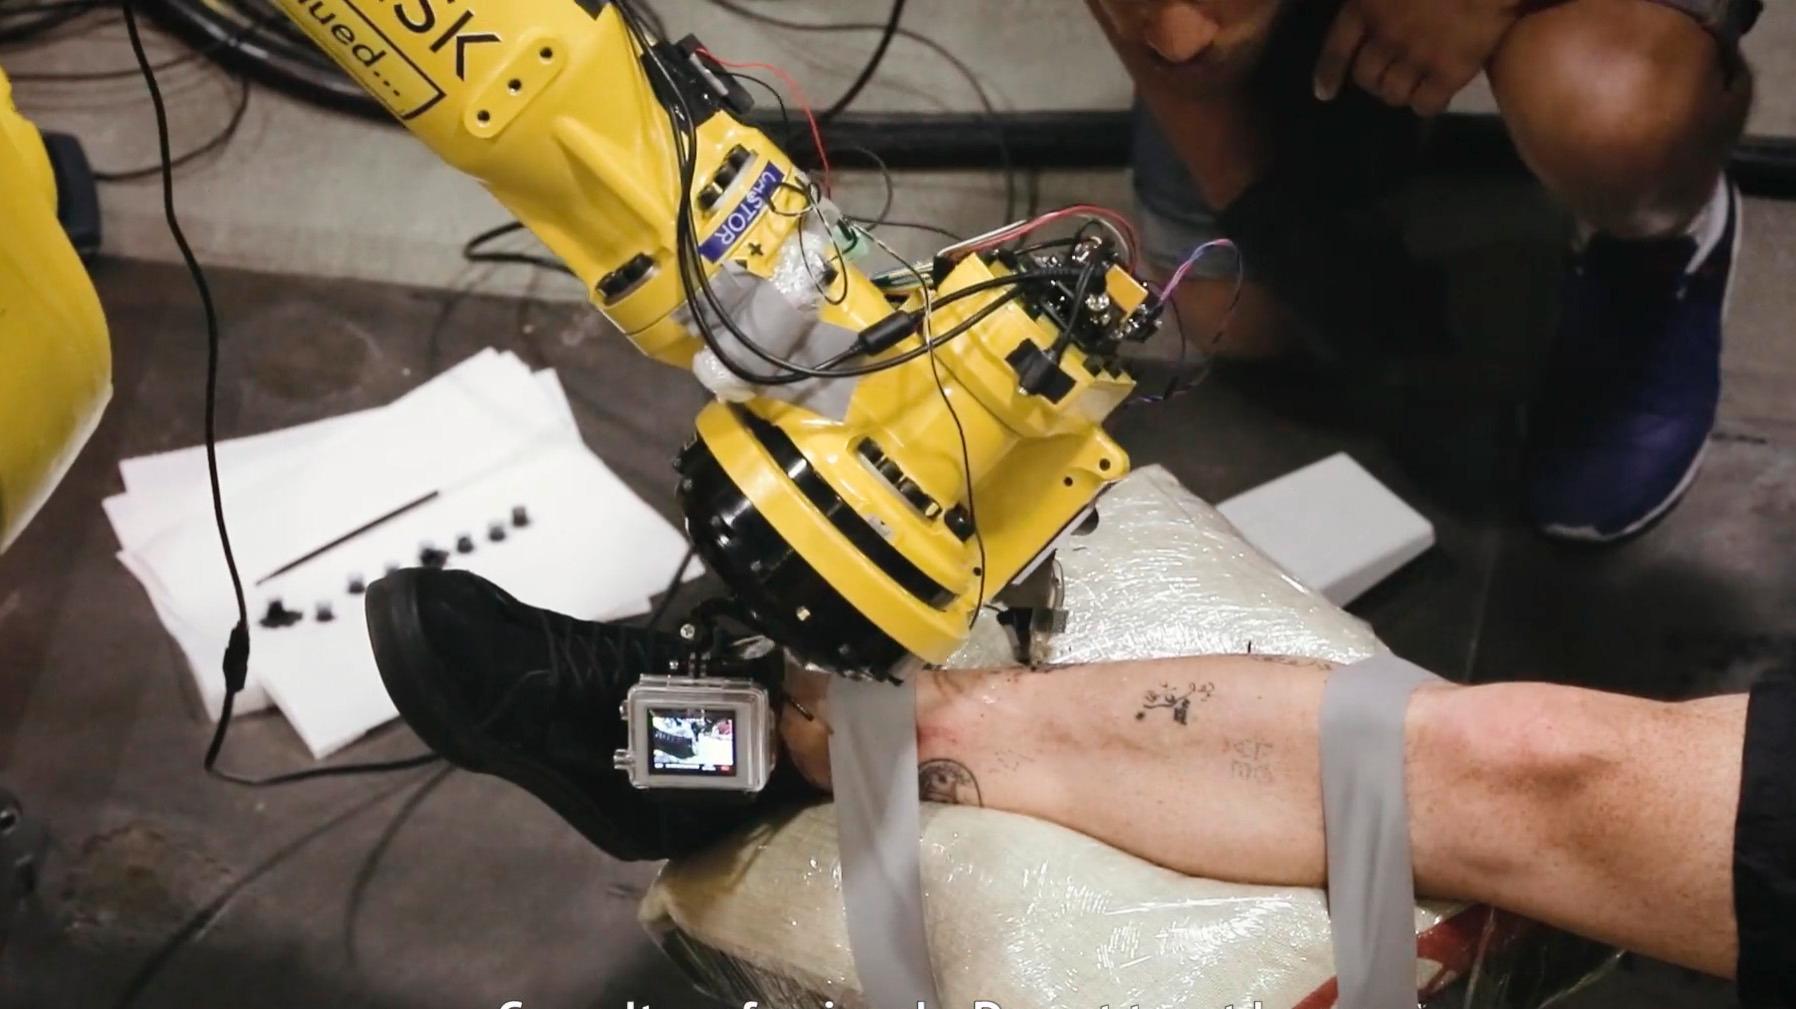 Appropriate Audiences har kalibrert en industrirobot til å utføre tatoveringer. (Skjermdump: Vimeo video)